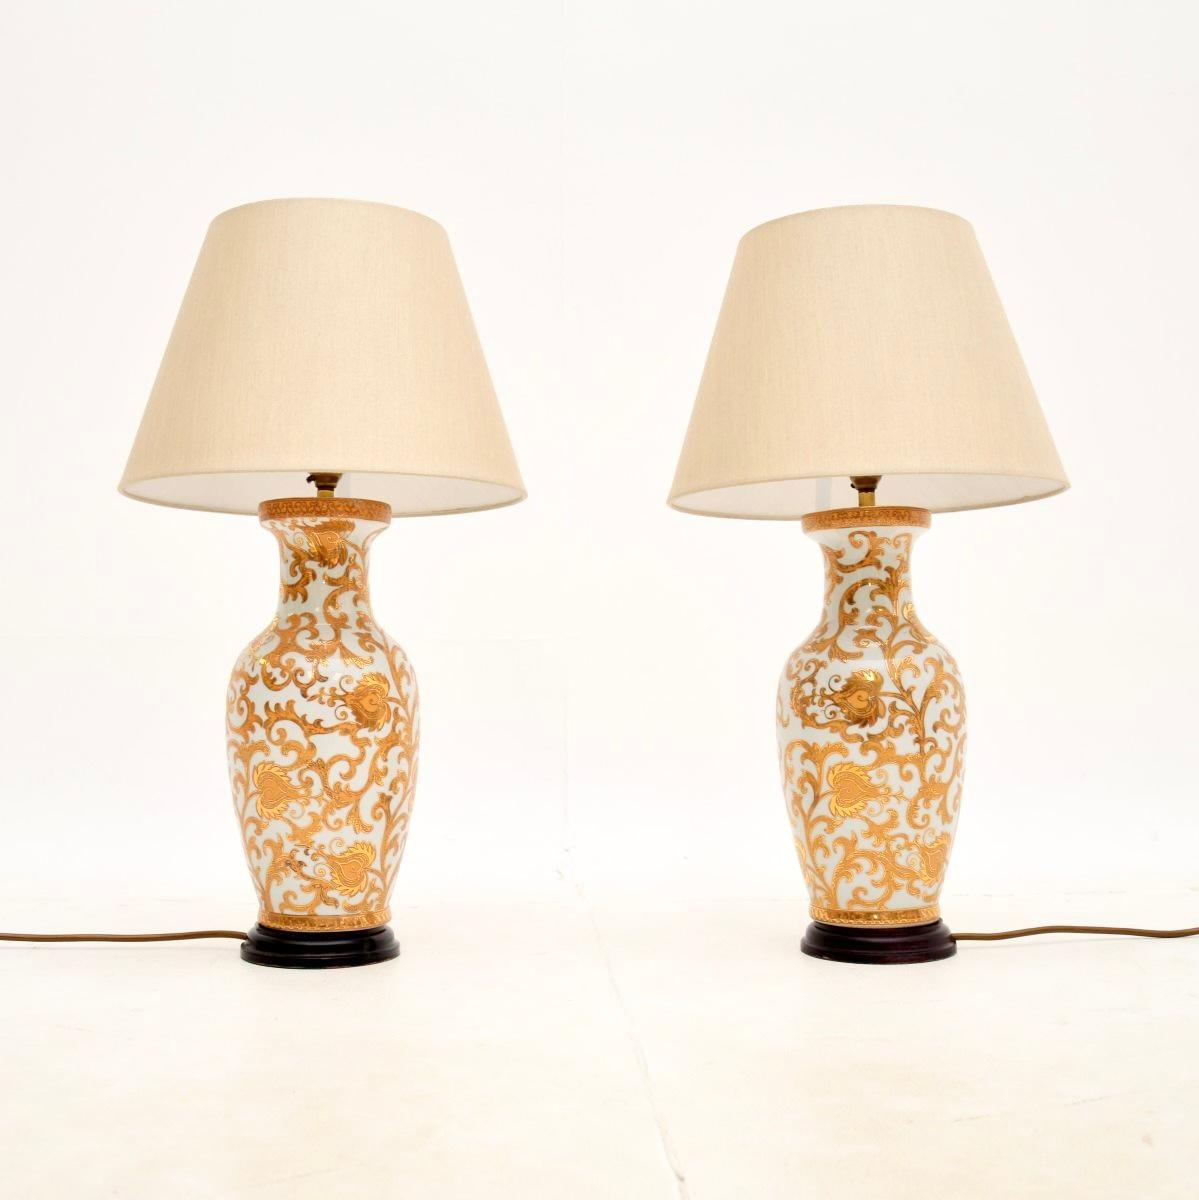 Une fantastique paire de lampes de table en céramique de style oriental. Fabriqués en Angleterre, ils datent des années 1970.

La qualité est exceptionnelle, ils sont magnifiquement réalisés. Nous les avons associées à une magnifique paire